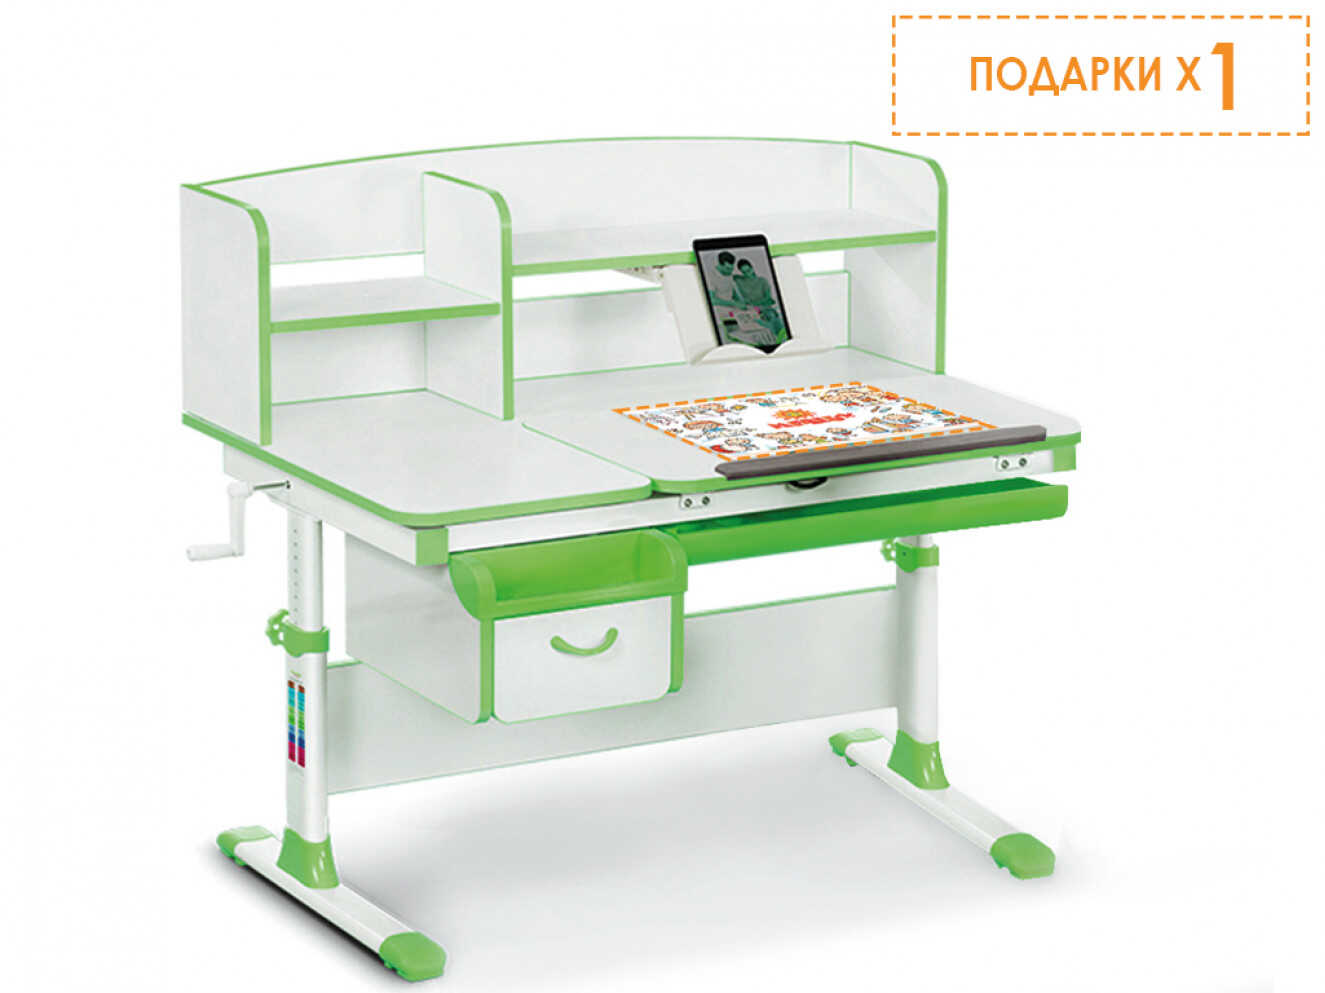 Дитячий стіл Evo-kids (стіл+ящик+надбудова) Evo-50 Z